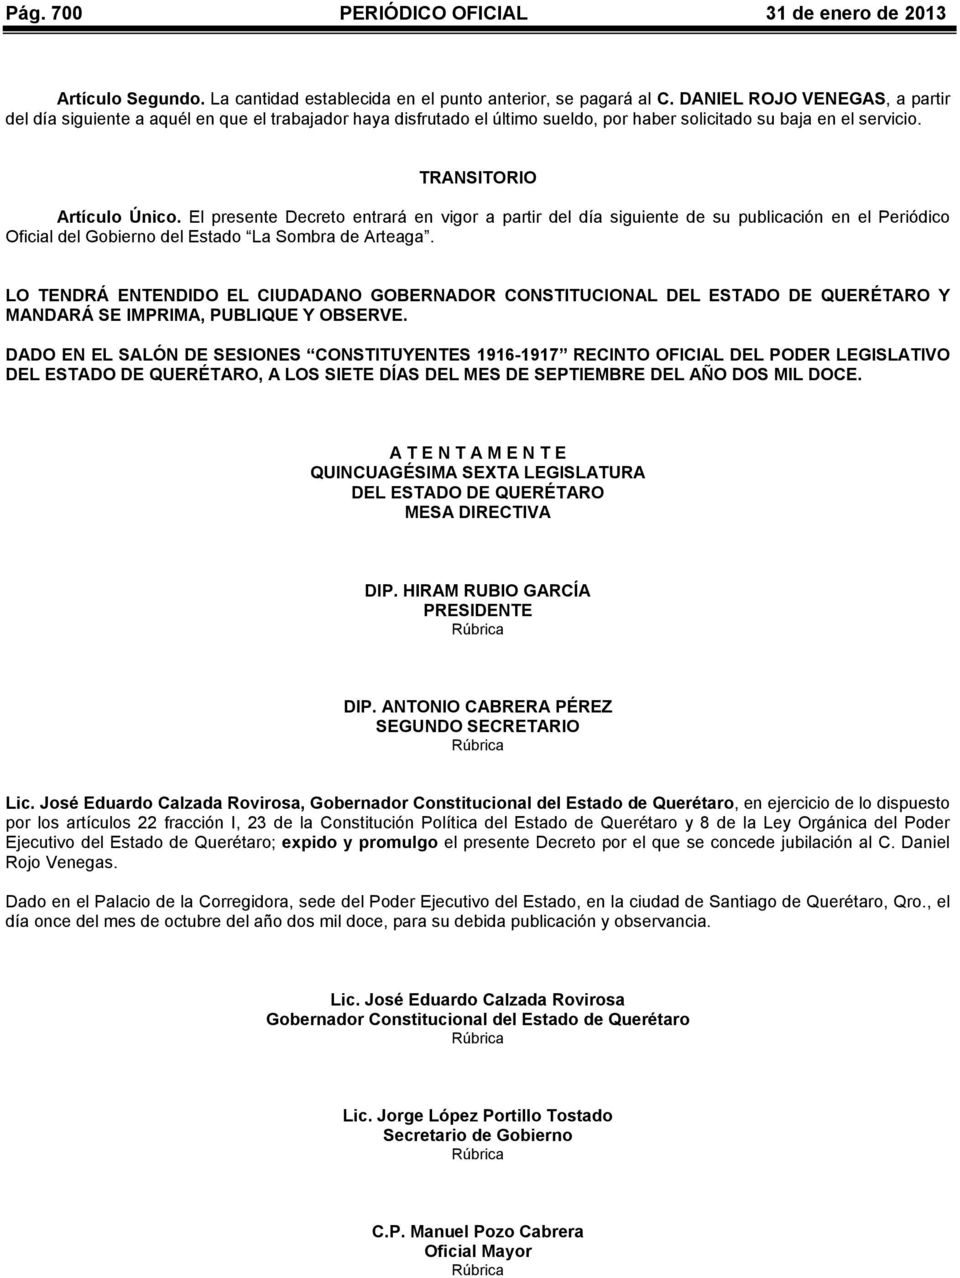 El presente Decreto entrará en vigor a partir del día siguiente de su publicación en el Periódico Oficial del Gobierno del Estado La Sombra de Arteaga.